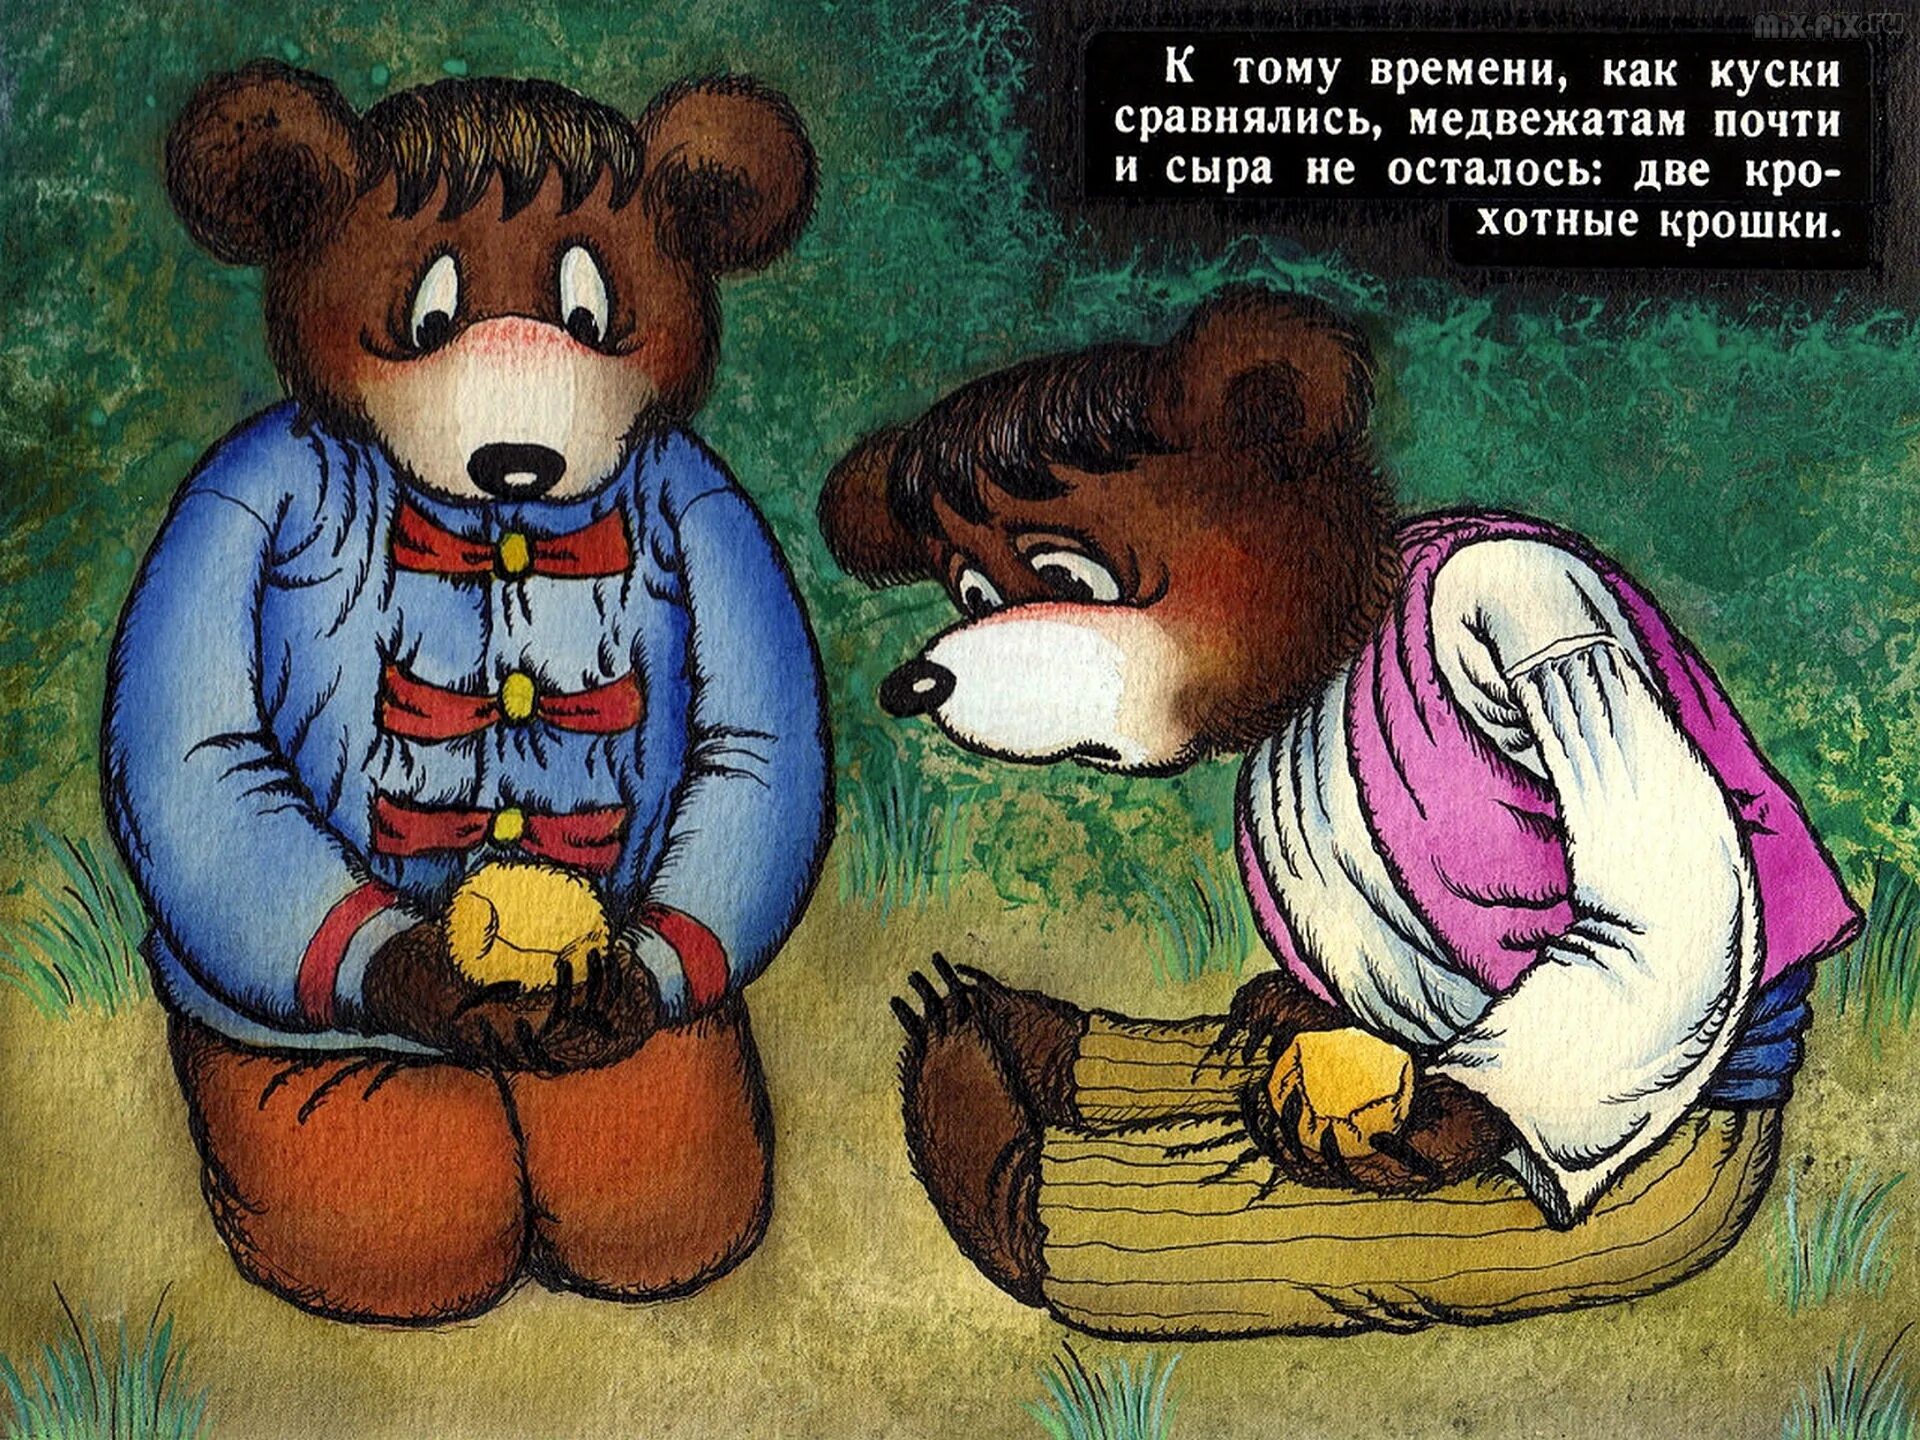 Читать про мишку. Два жадных медвежонка сказка. Сказка 2 жадных медвежонка. Иллюстрации к сказке два жадных медвежонка. Иллюстрации к сказке два жадных медвежонка в картинках для детей.